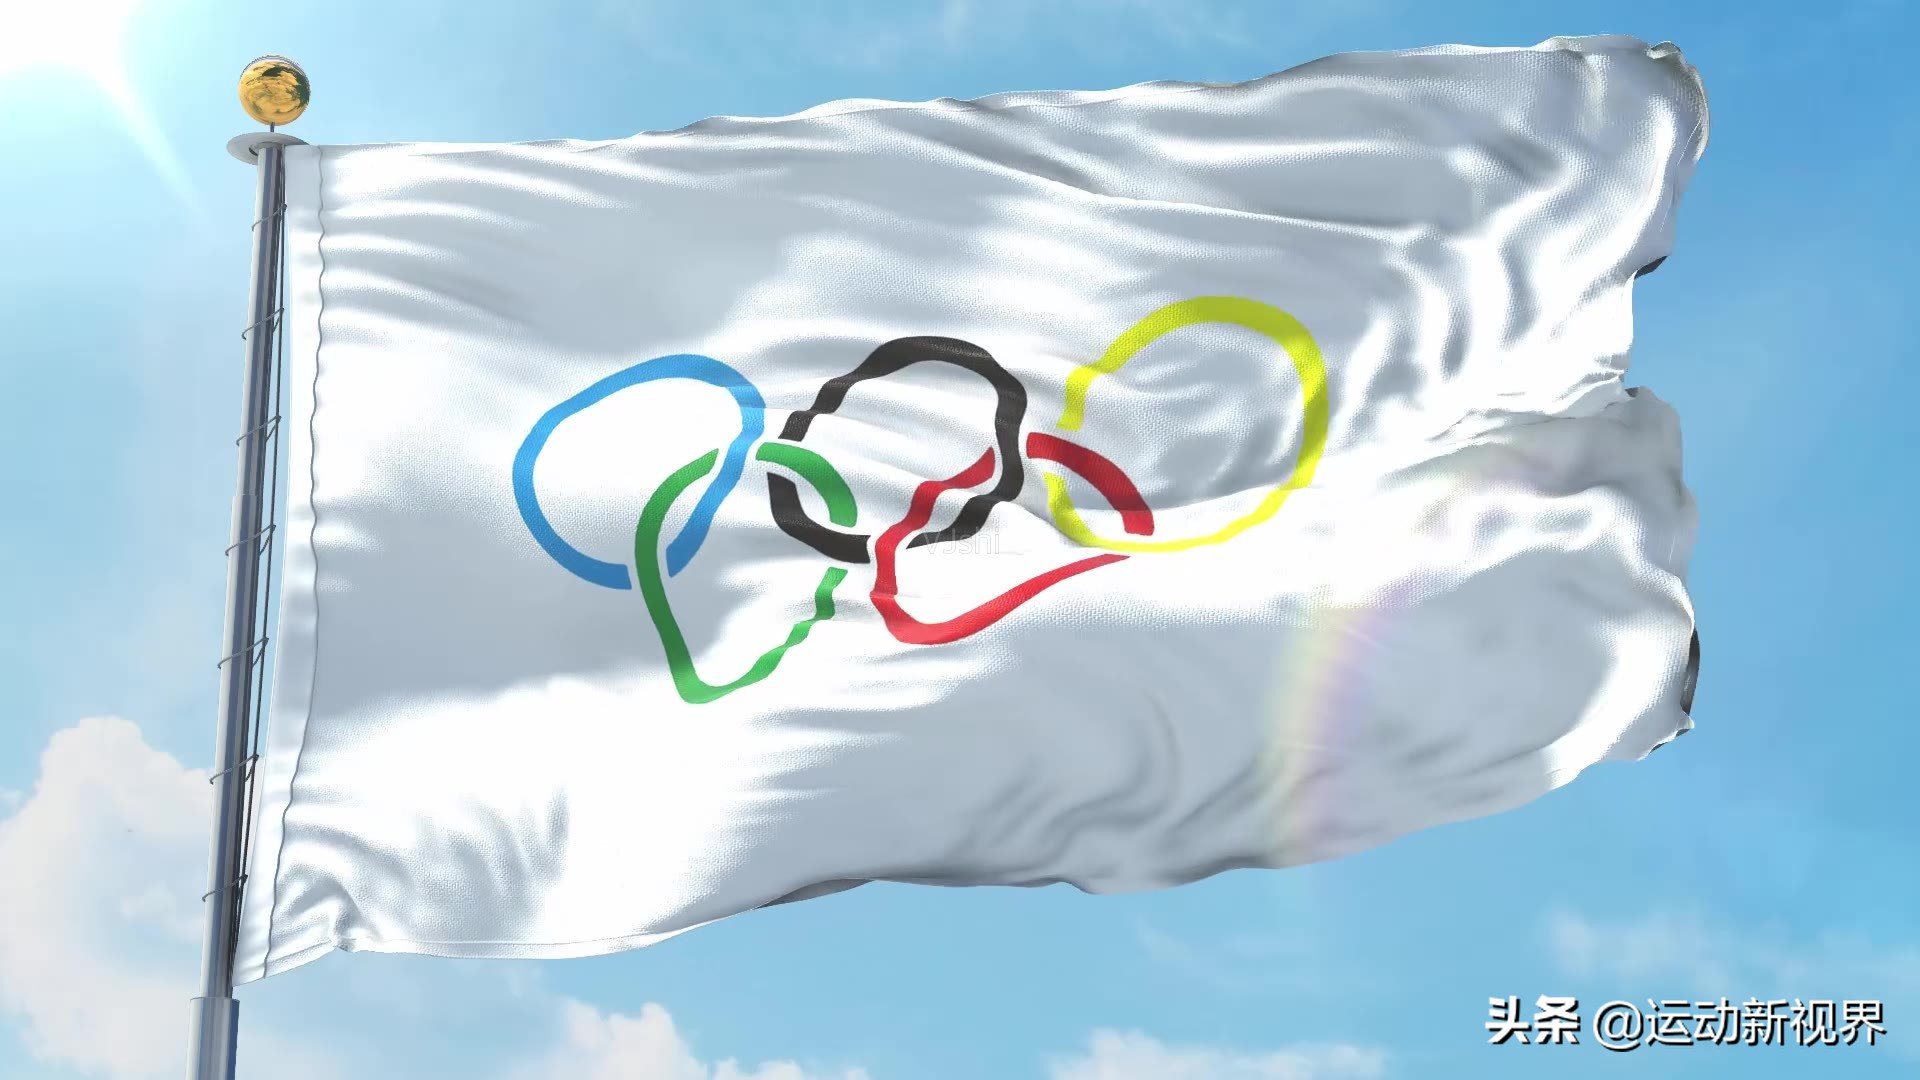 奥运五环代表什么黄环图片